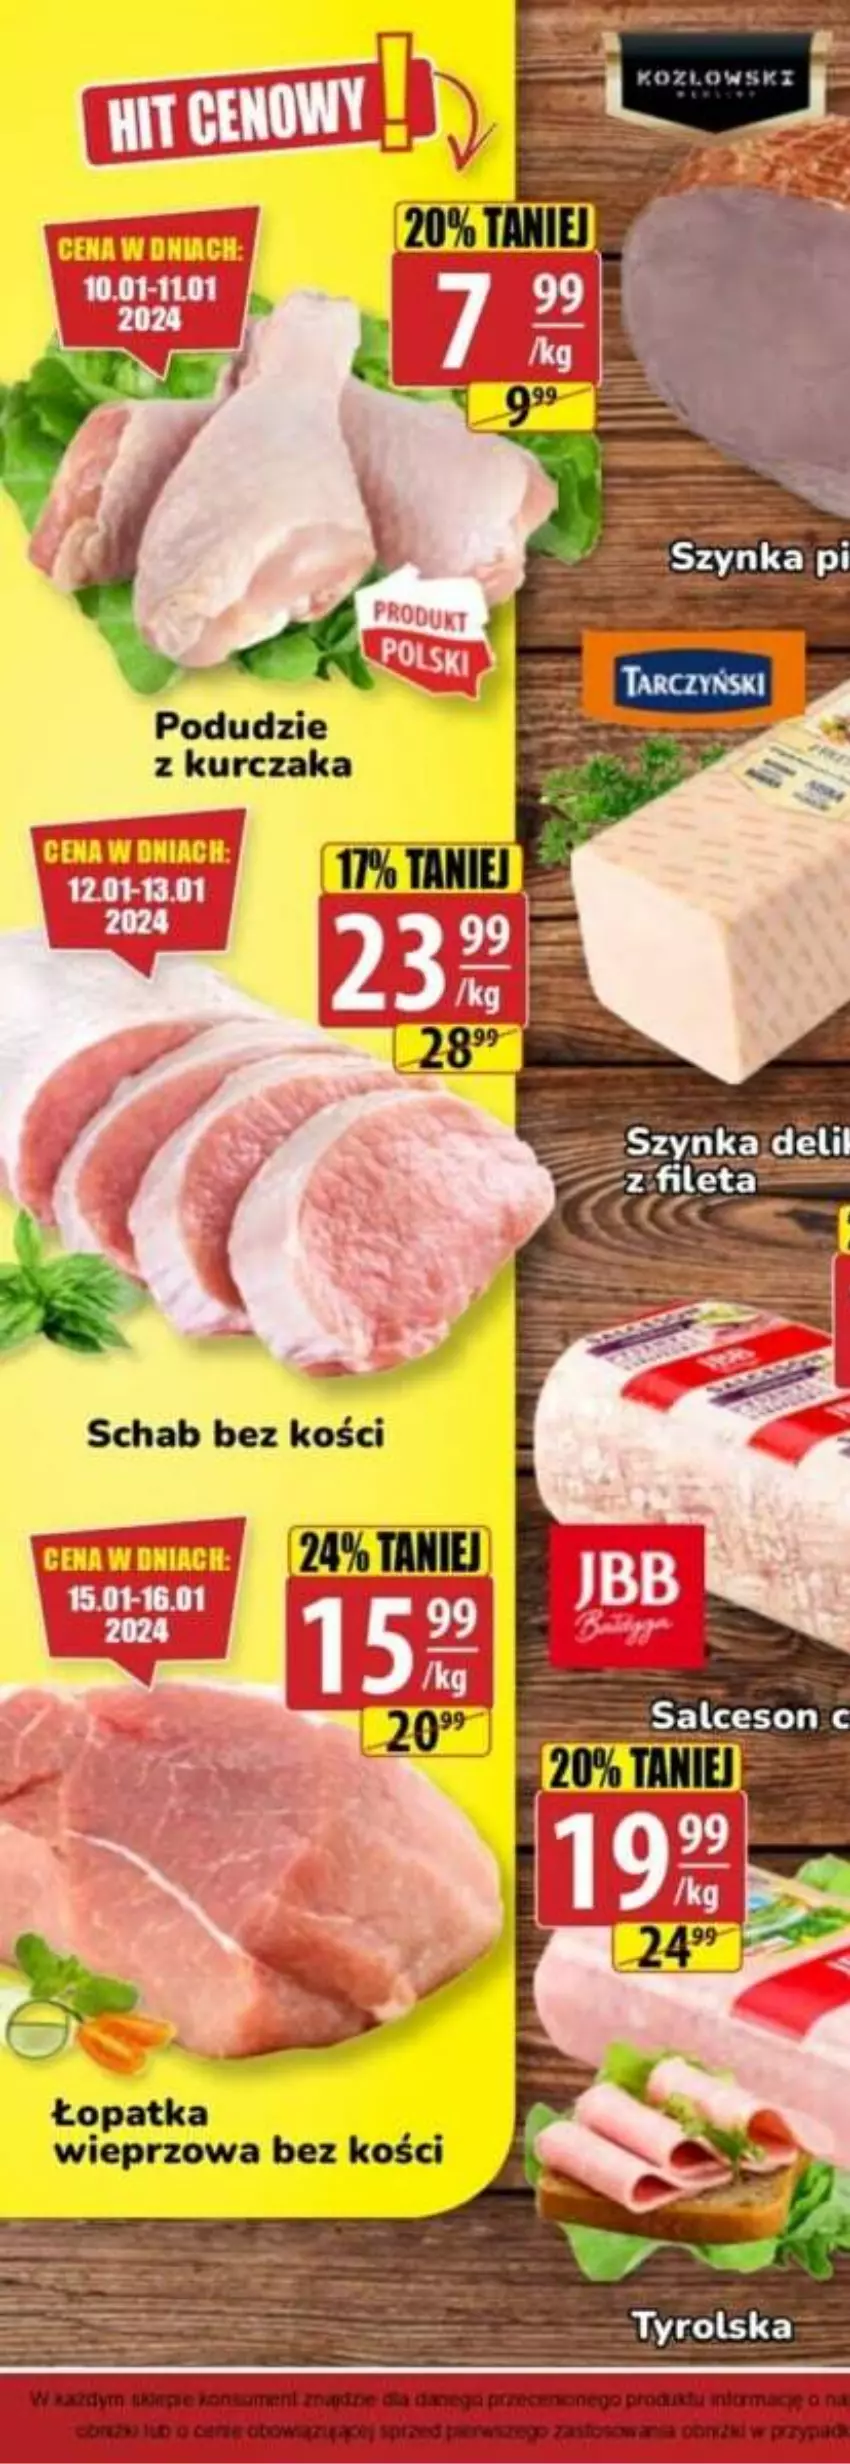 Gazetka promocyjna Gram market - ważna 10.01 do 16.01.2024 - strona 2 - produkty: Kurczak, Podudzie z kurczaka, Szynka